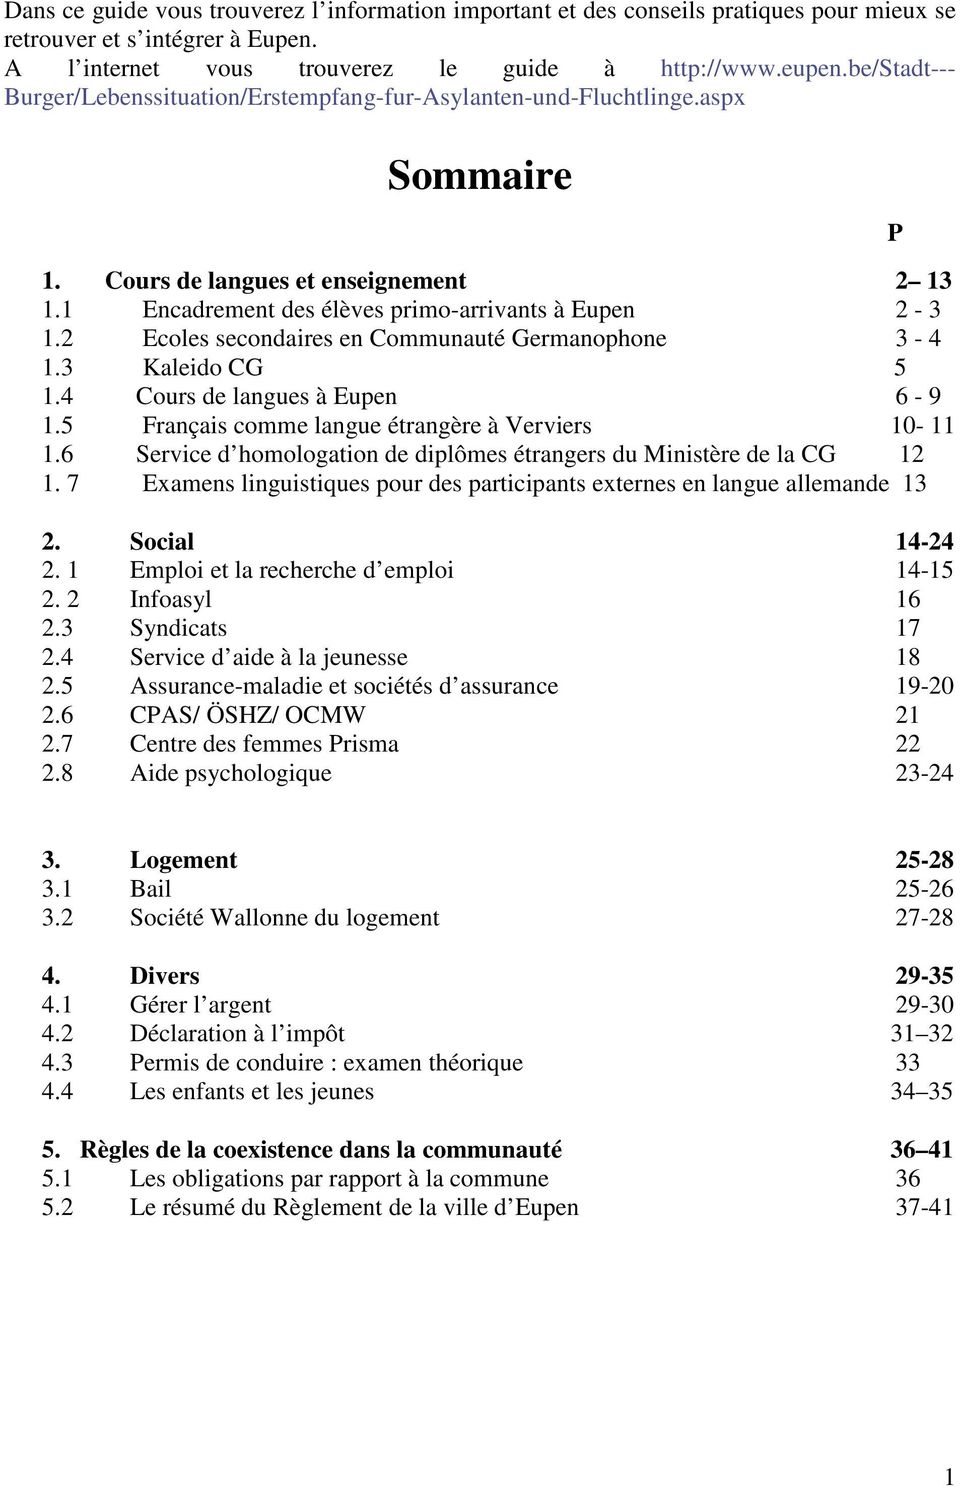 2 Ecoles secondaires en Communauté Germanophone 3-4 1.3 Kaleido CG 5 1.4 Cours de langues à Eupen 6-9 1.5 Français comme langue étrangère à Verviers 10-11 1.